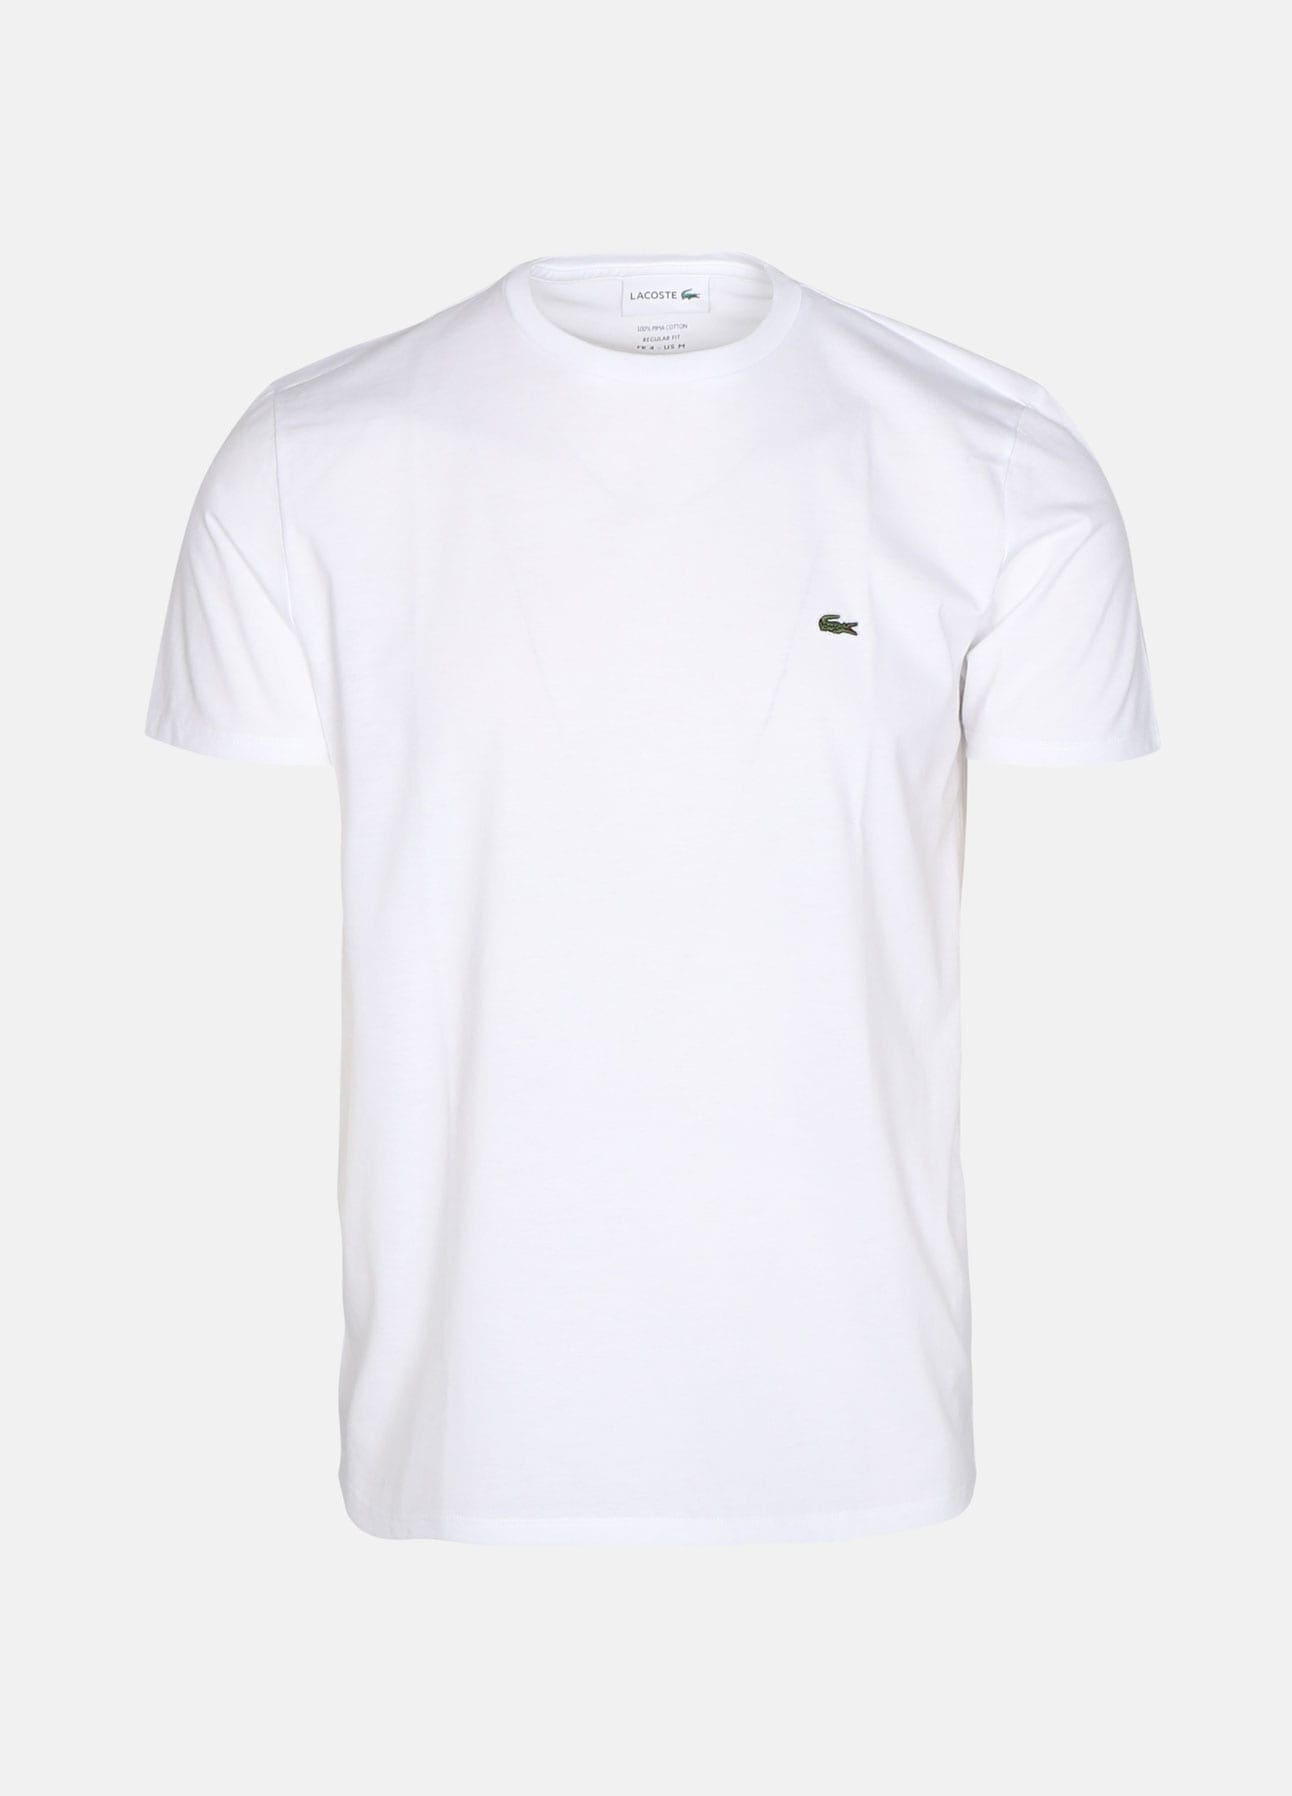 hvid t-shirt fra lacoste